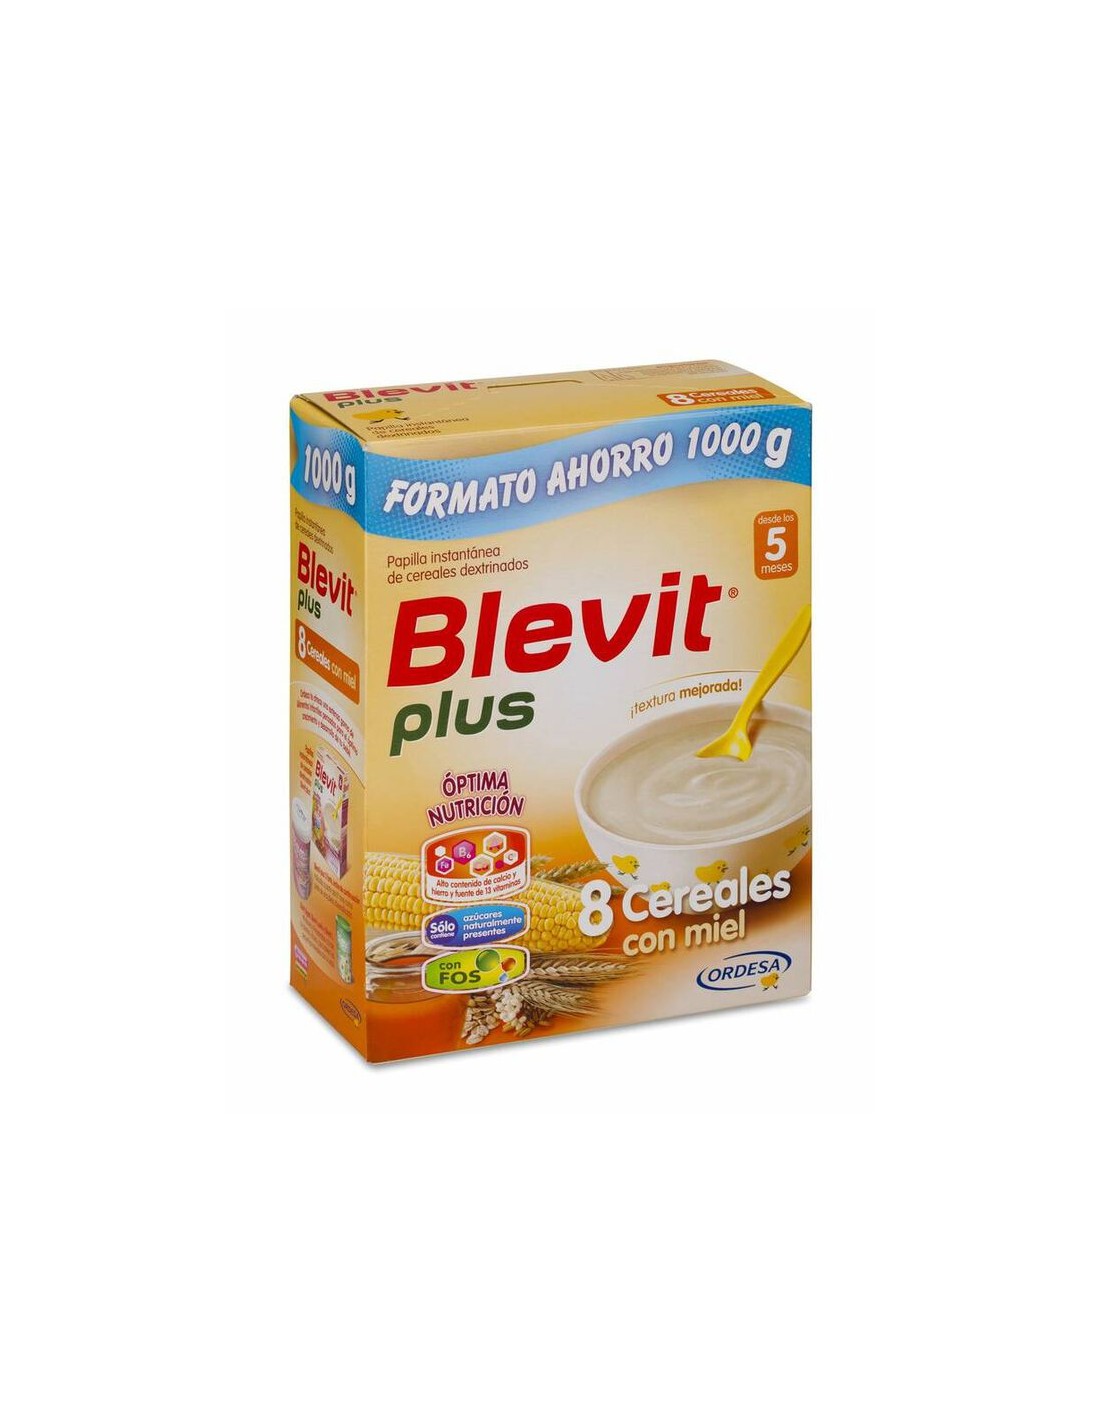 Blevit Plus 8 Cereales con Miel Formato Ahorro 1000 g